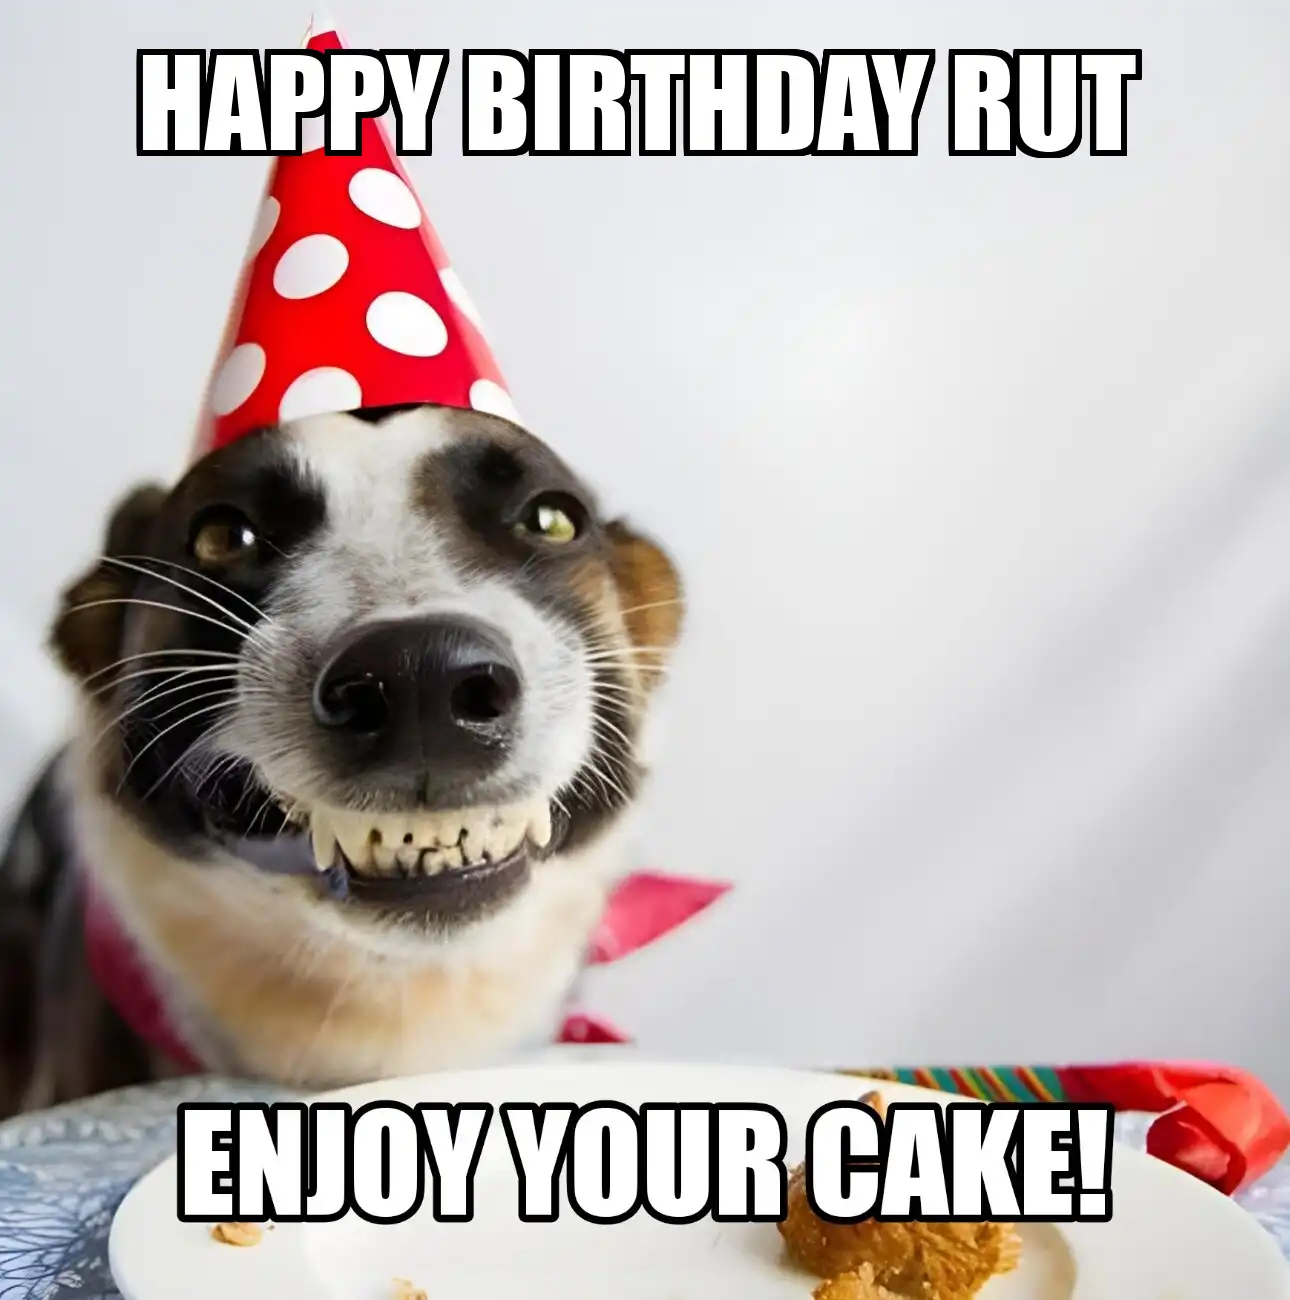 Happy Birthday Rut Enjoy Your Cake Dog Meme